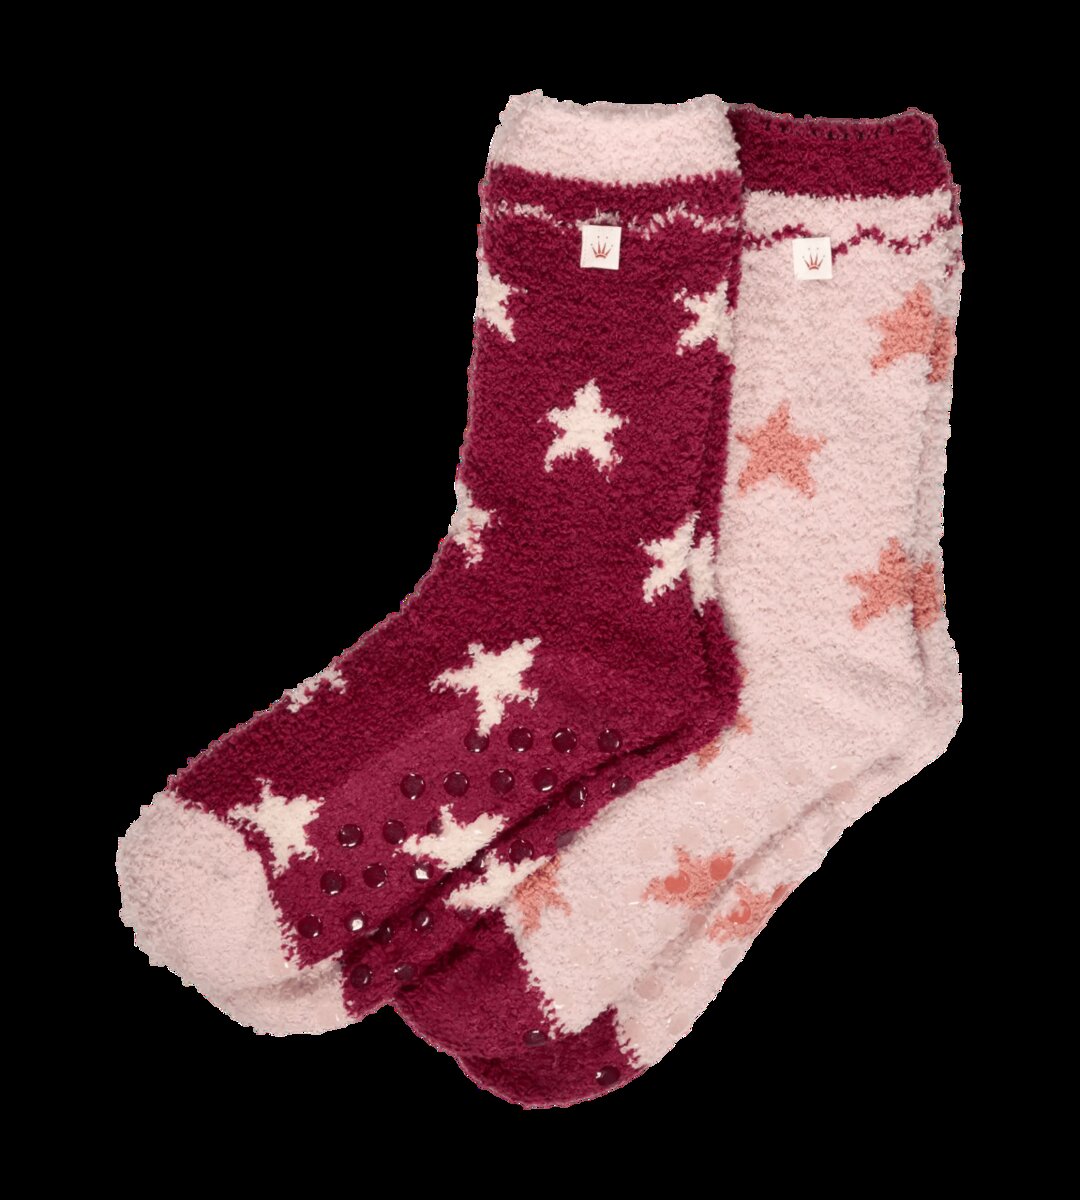 Teplé chodidla - Dámské ponožky Triumph, světlá kombinace červené (M005) 1 i147_81536957